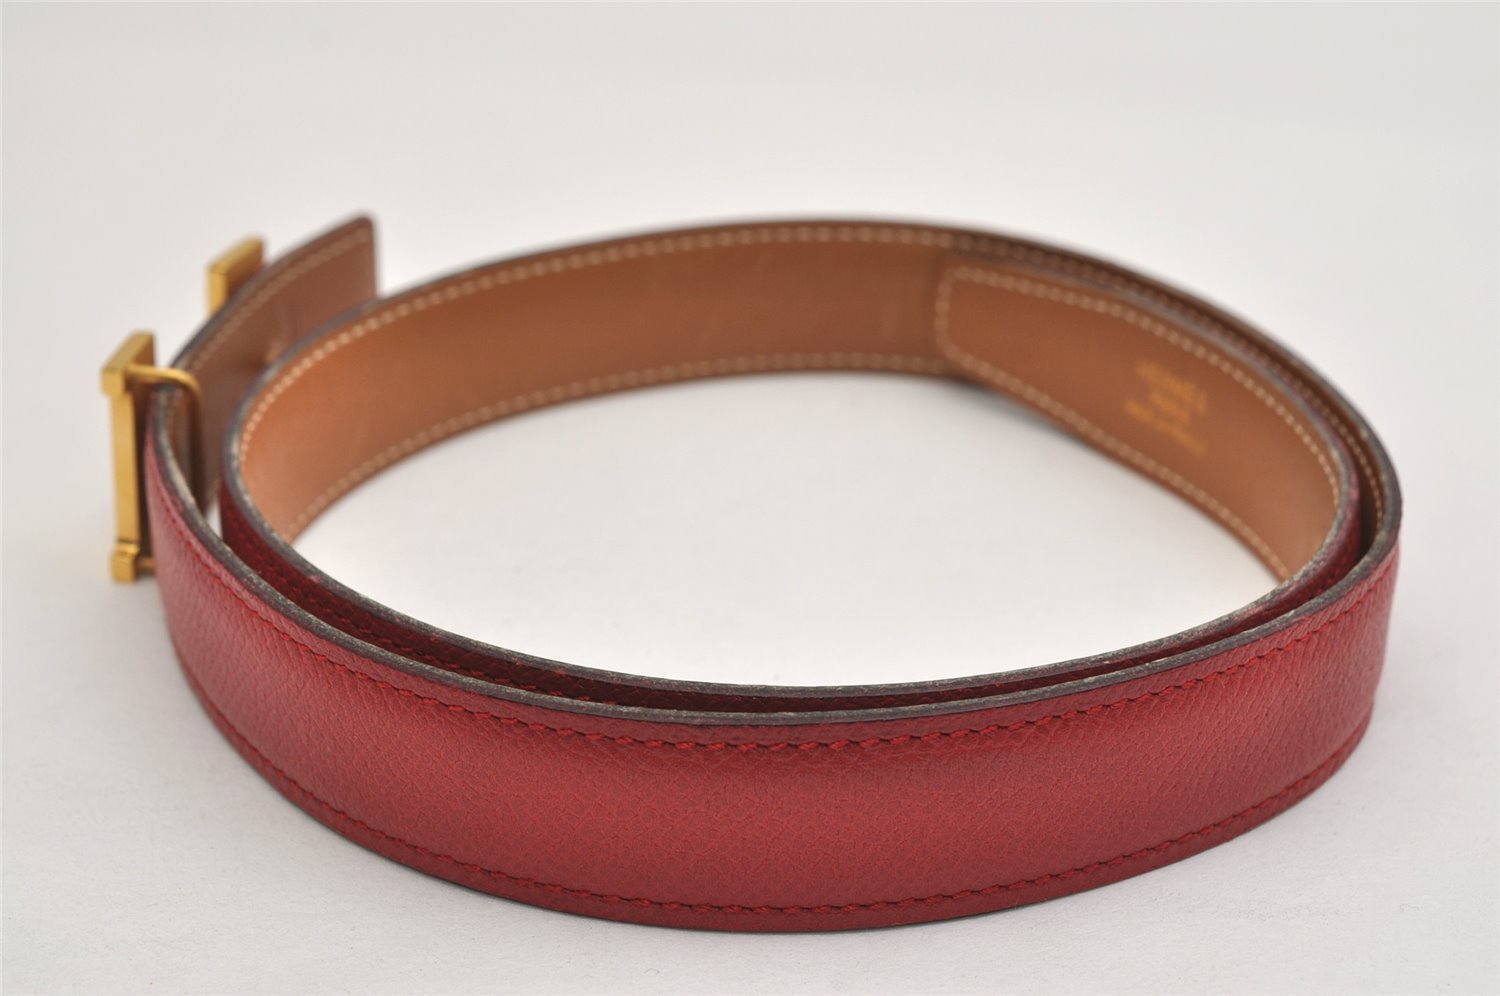 Authentic HERMES Mini Constance Leather Belt Size 65cm 25.6